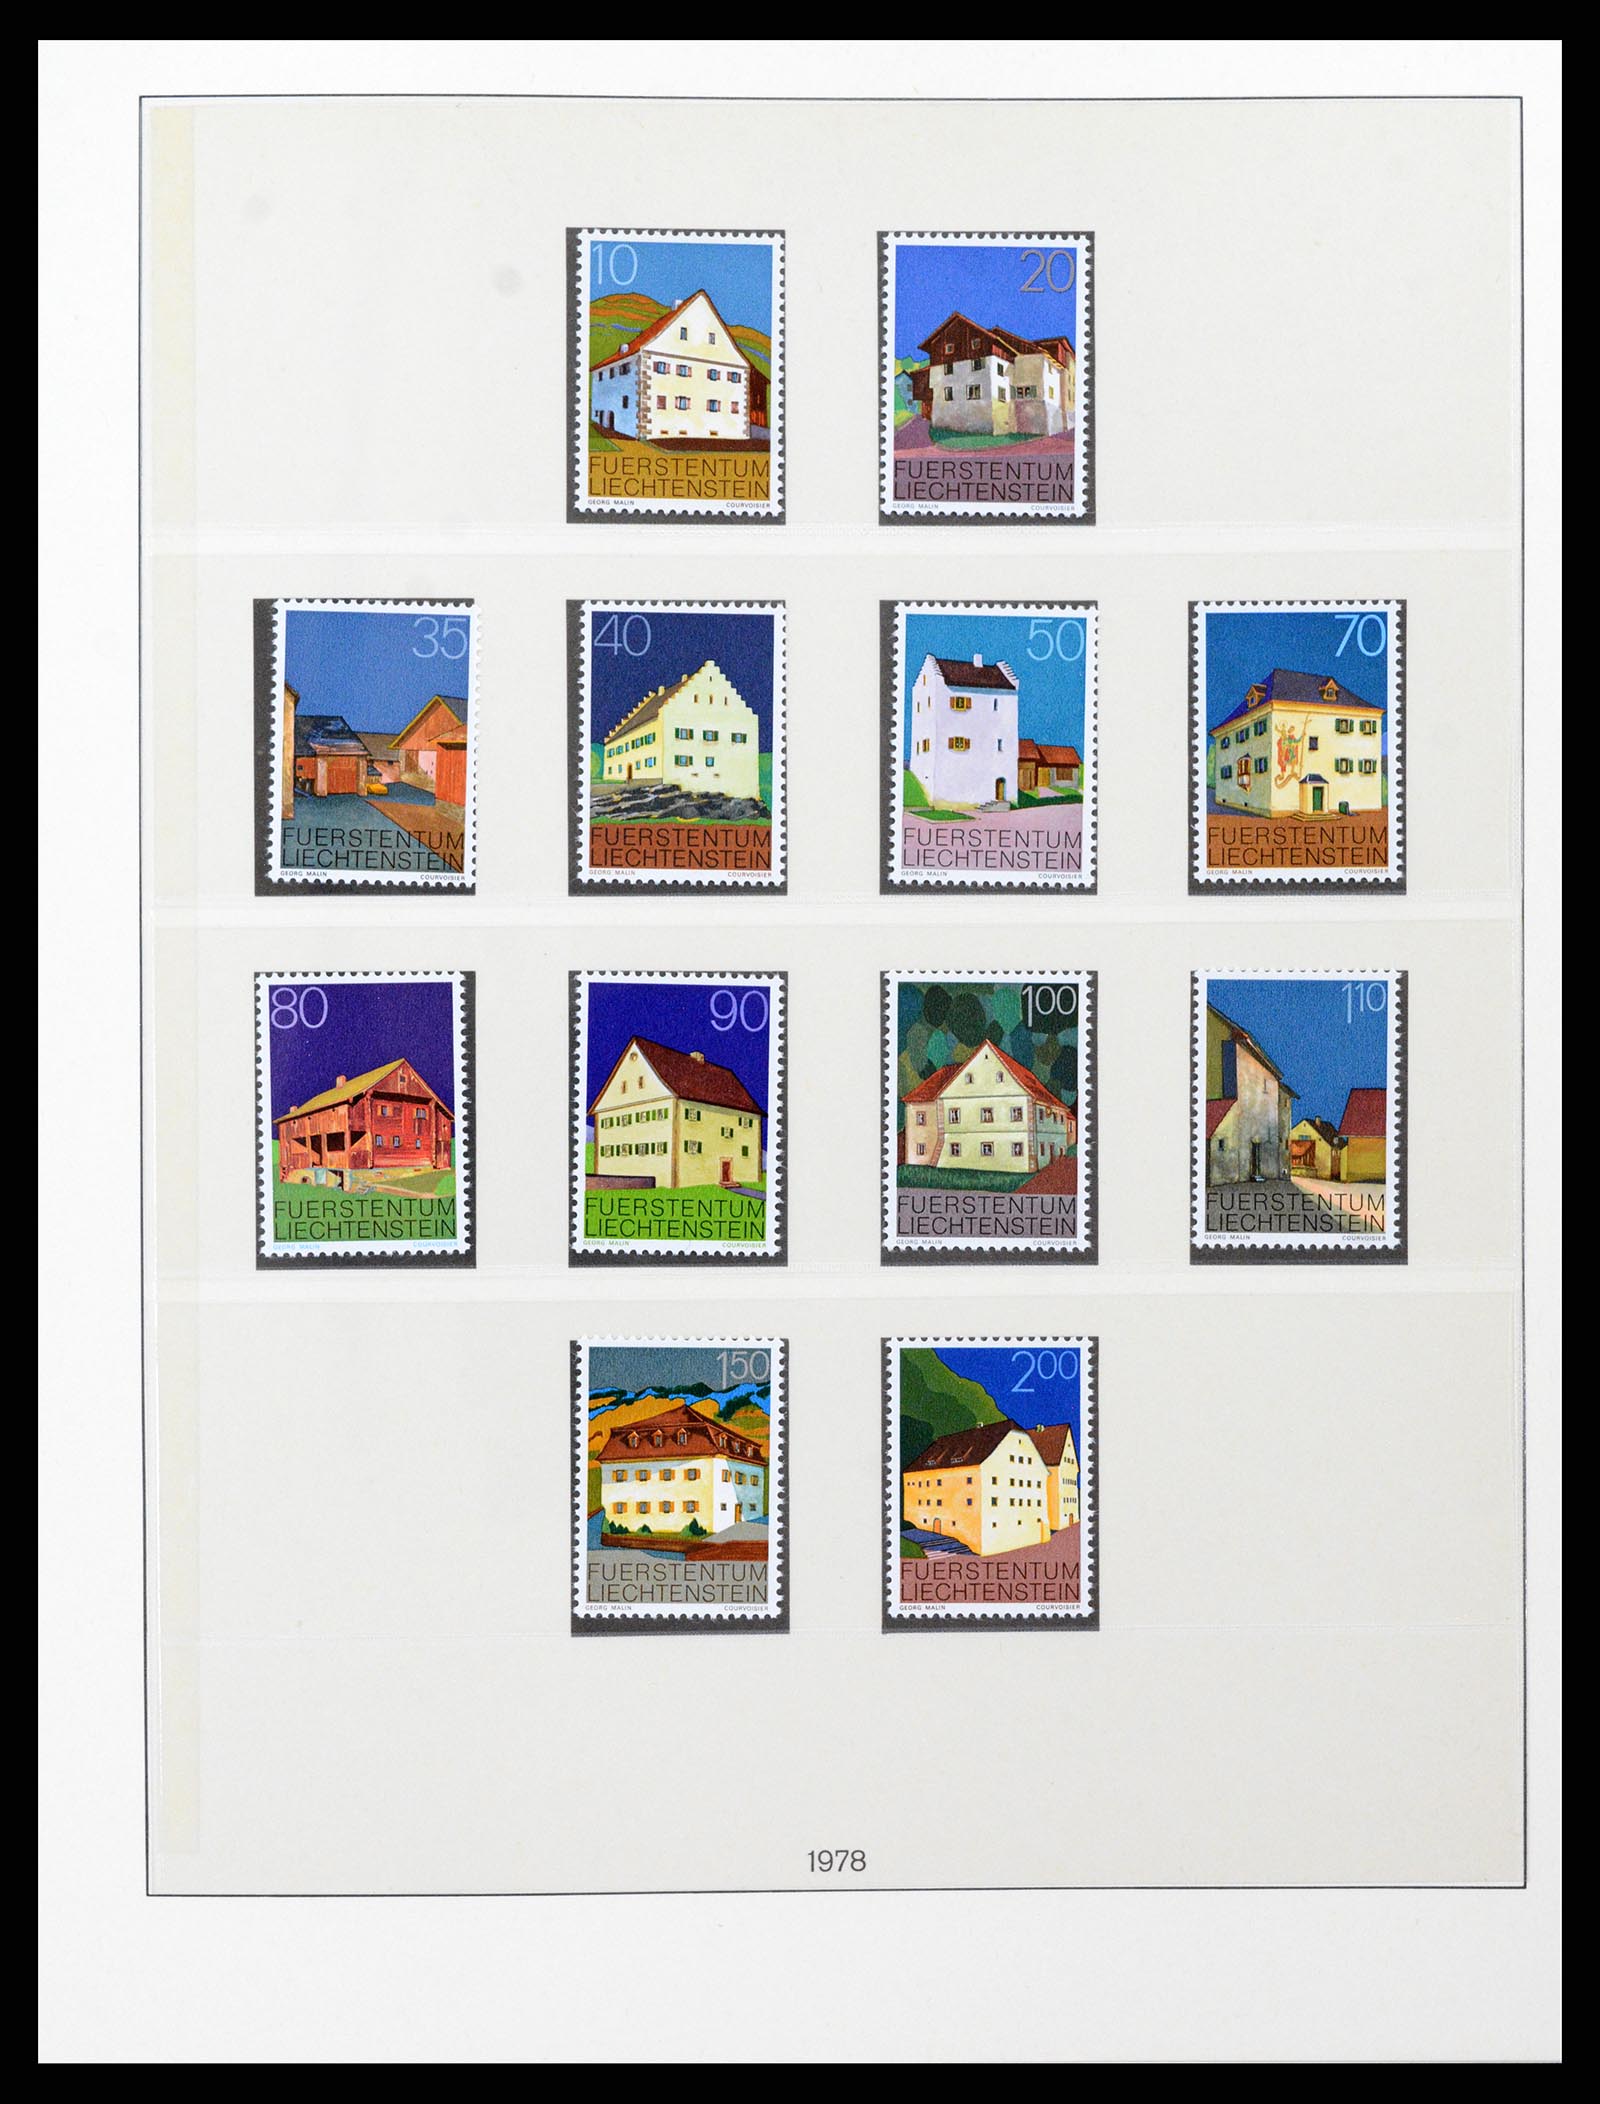 37293 074 - Stamp collection 37293 Liechtenstein 1912-2003.